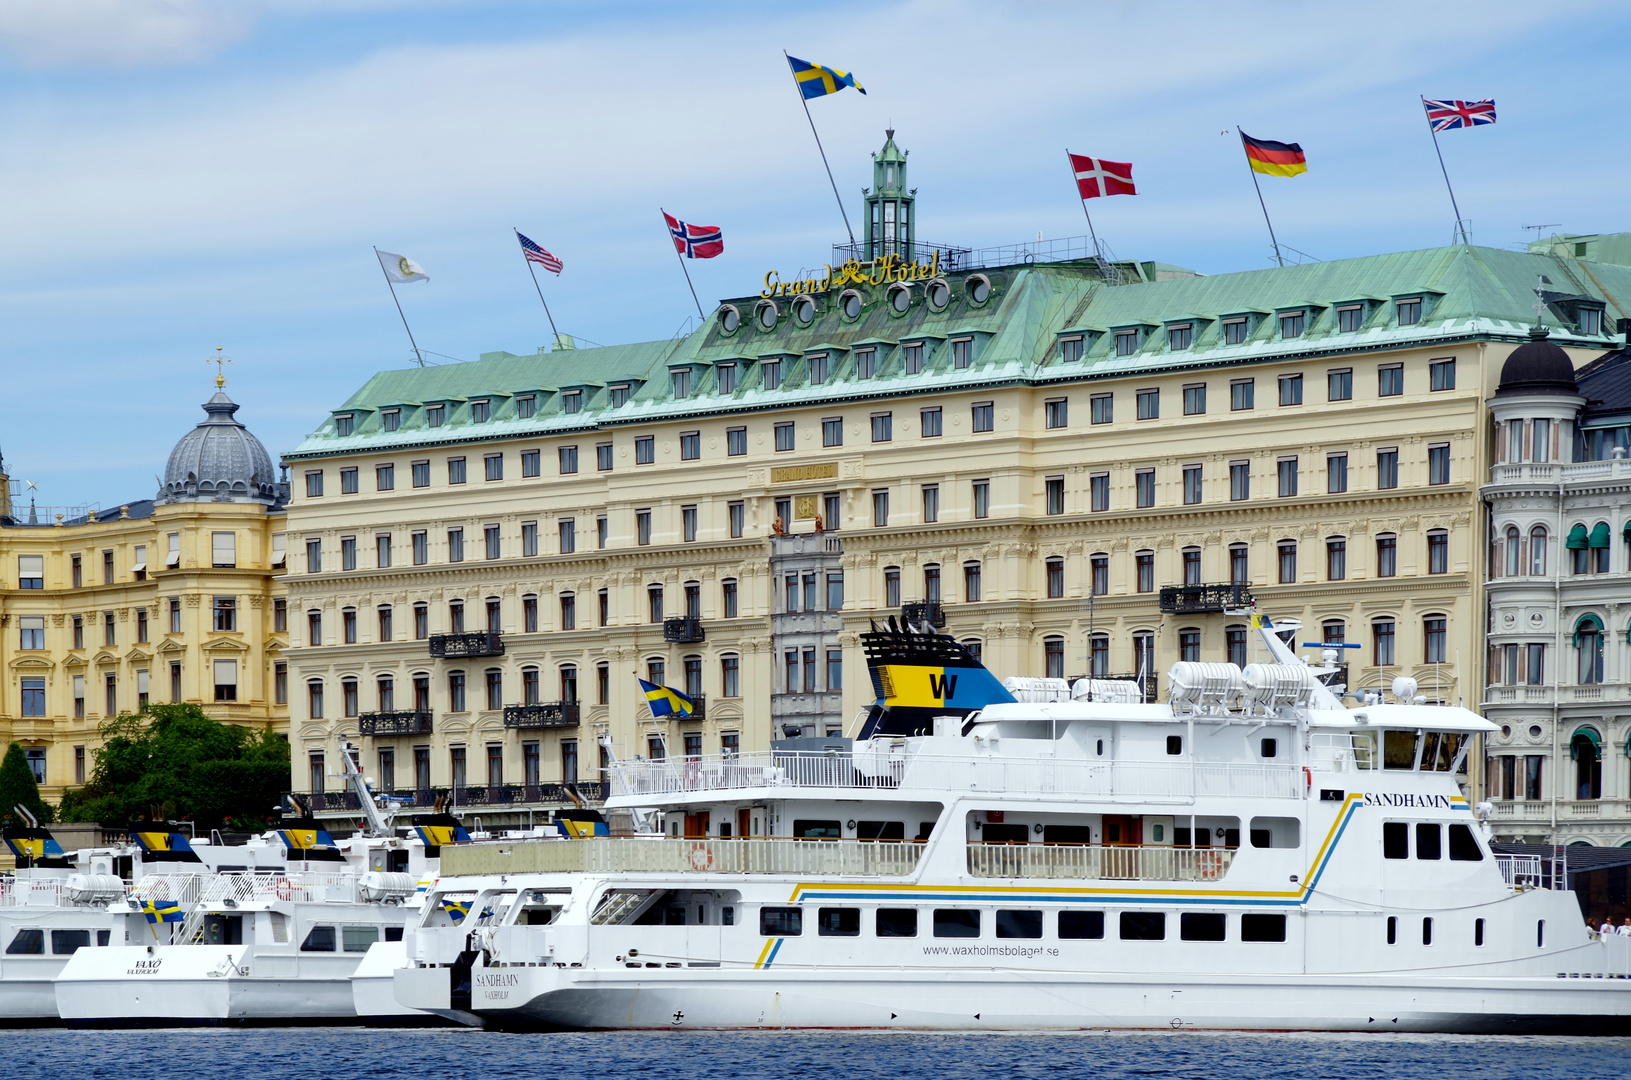 Stockholmer Ansichten vom Wasser aus (3)